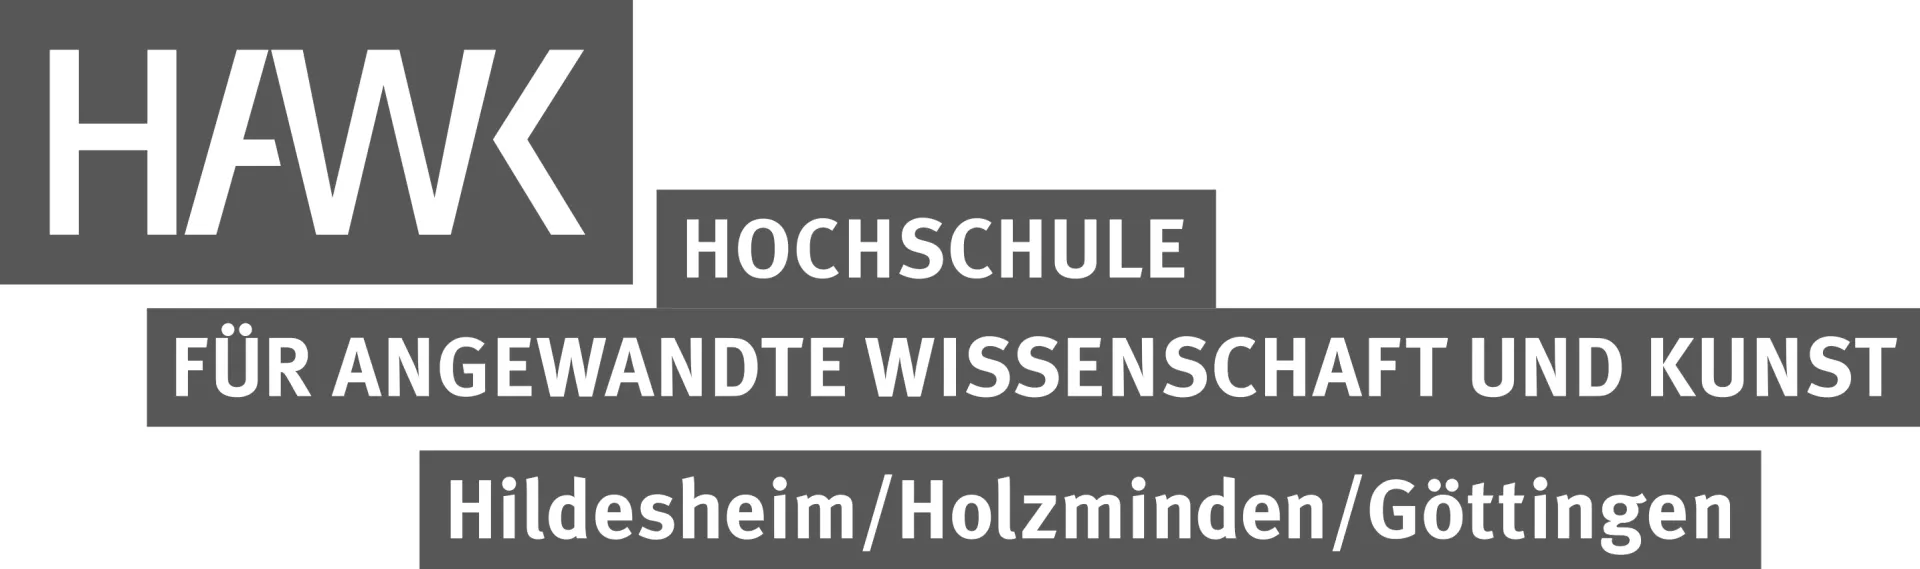 HAWK Hildesheim